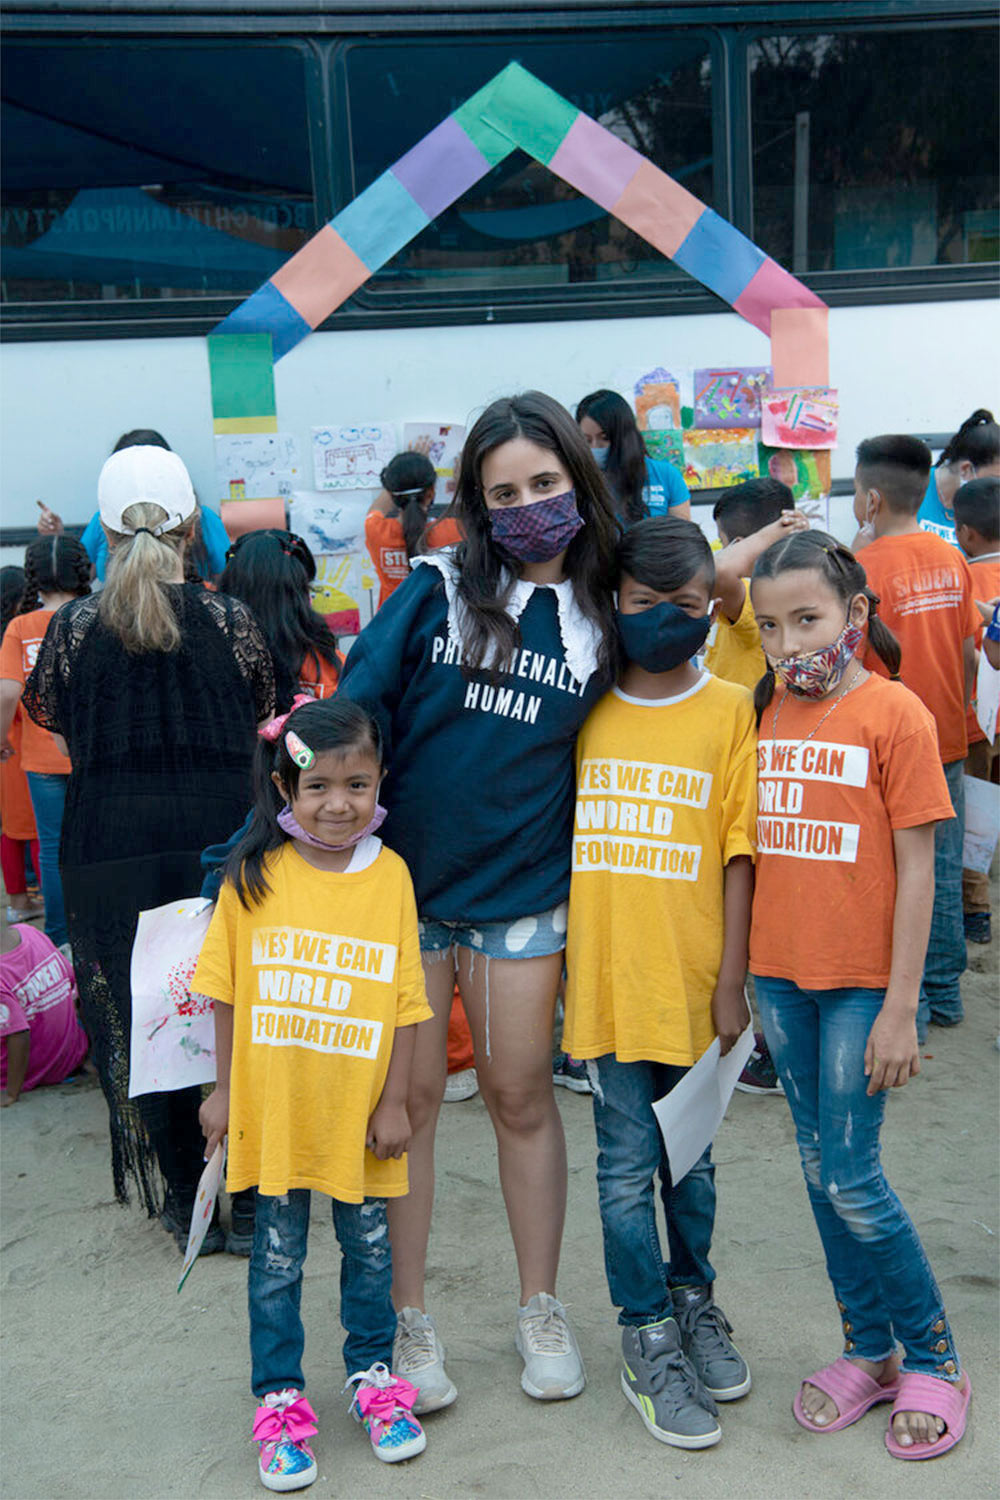 Camila Cabello visita abrigo de refugiados